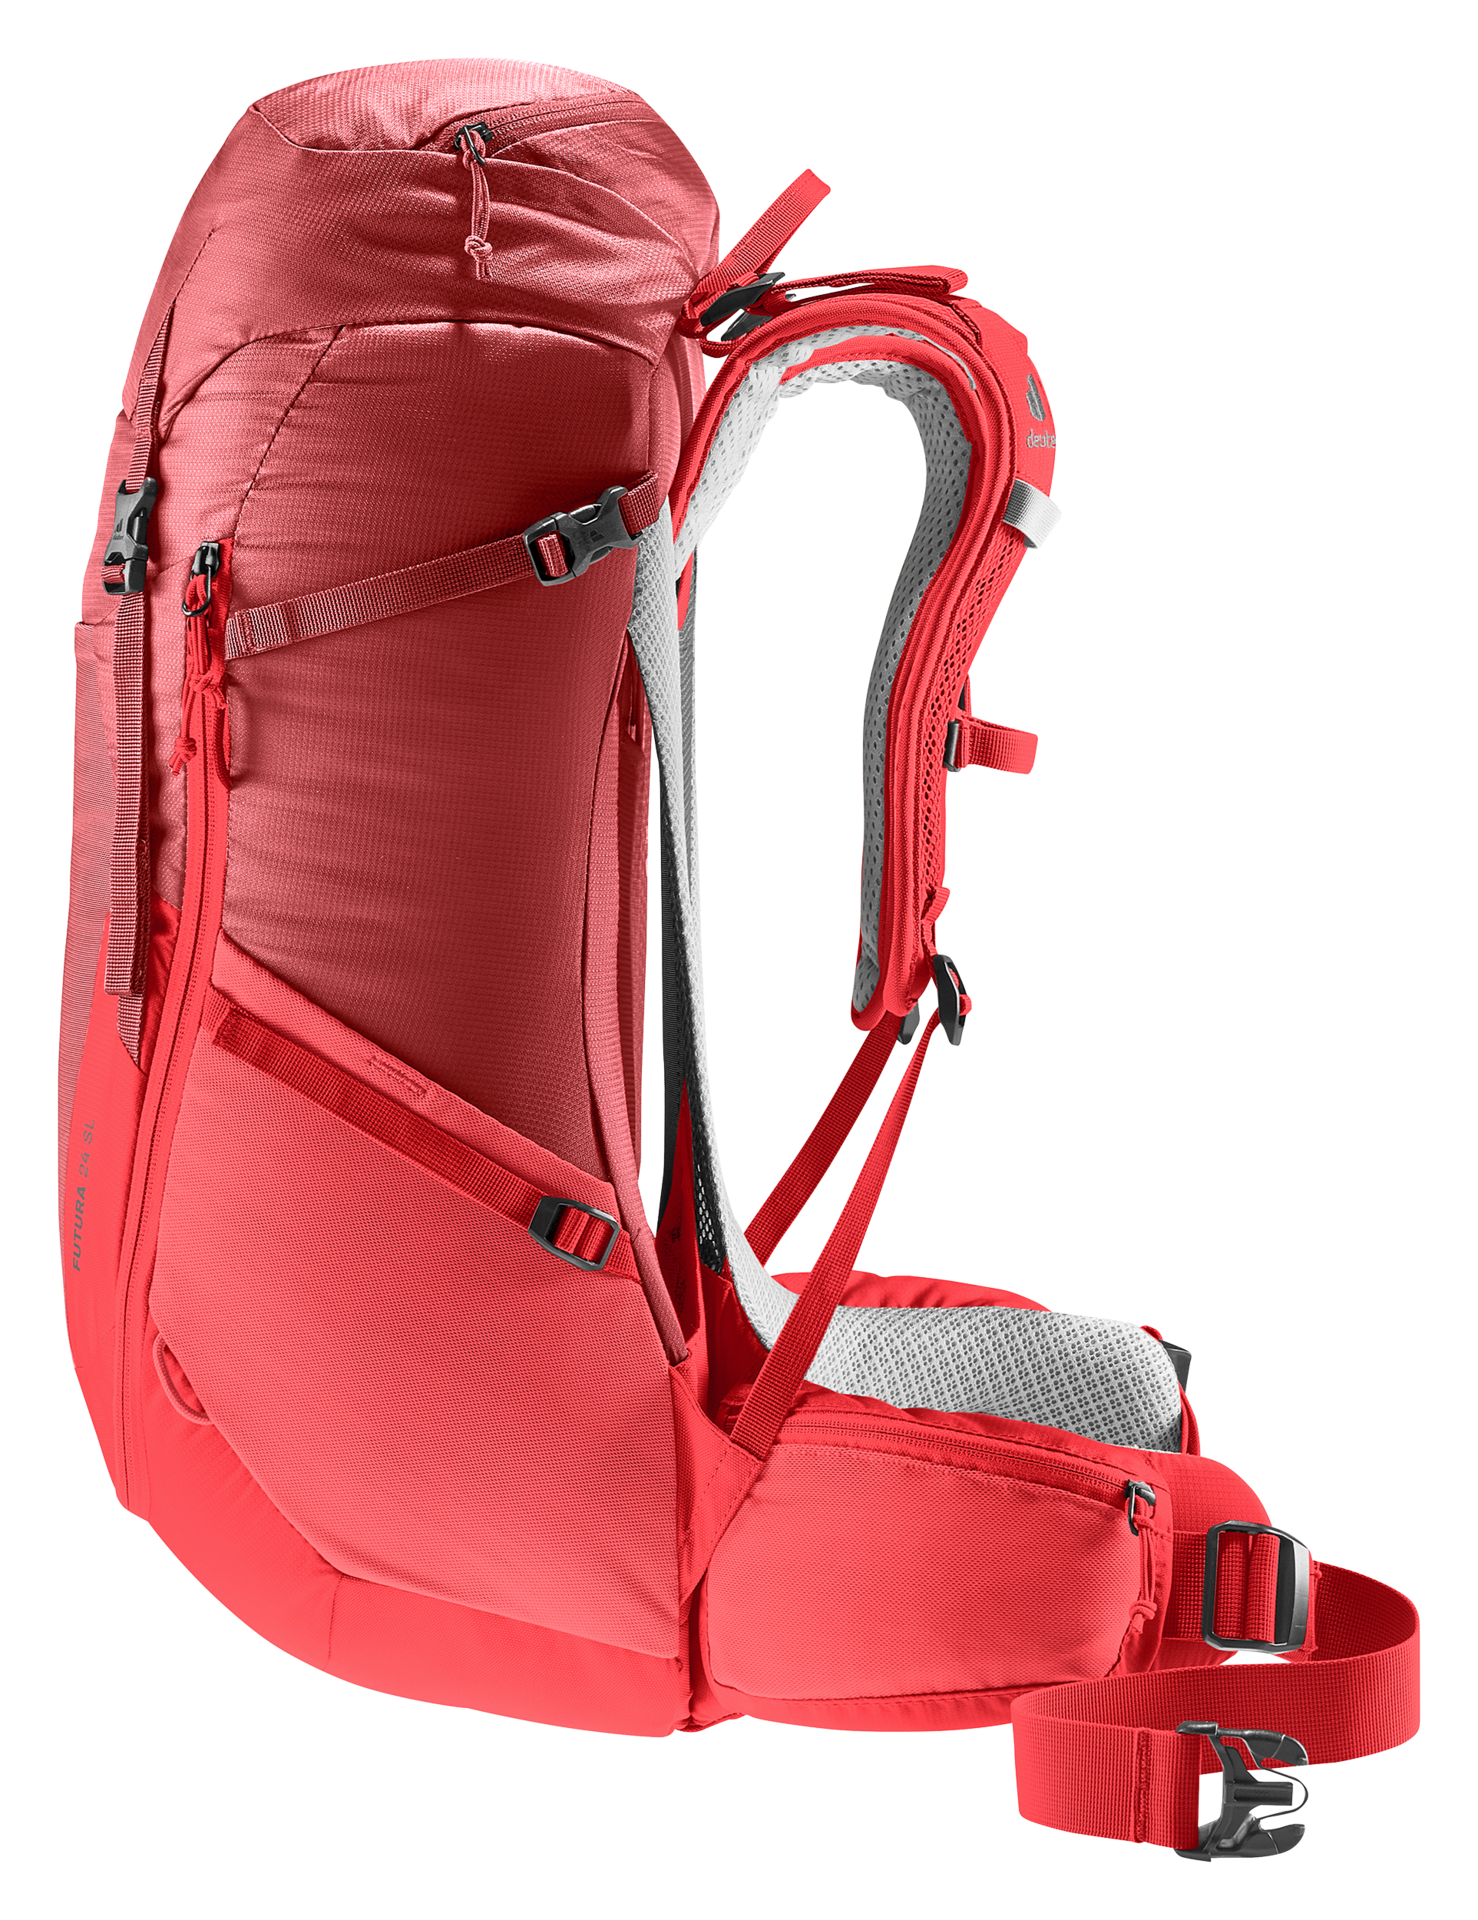 30SL Backpack Futura Trekking Neverland | Deuter Firenze